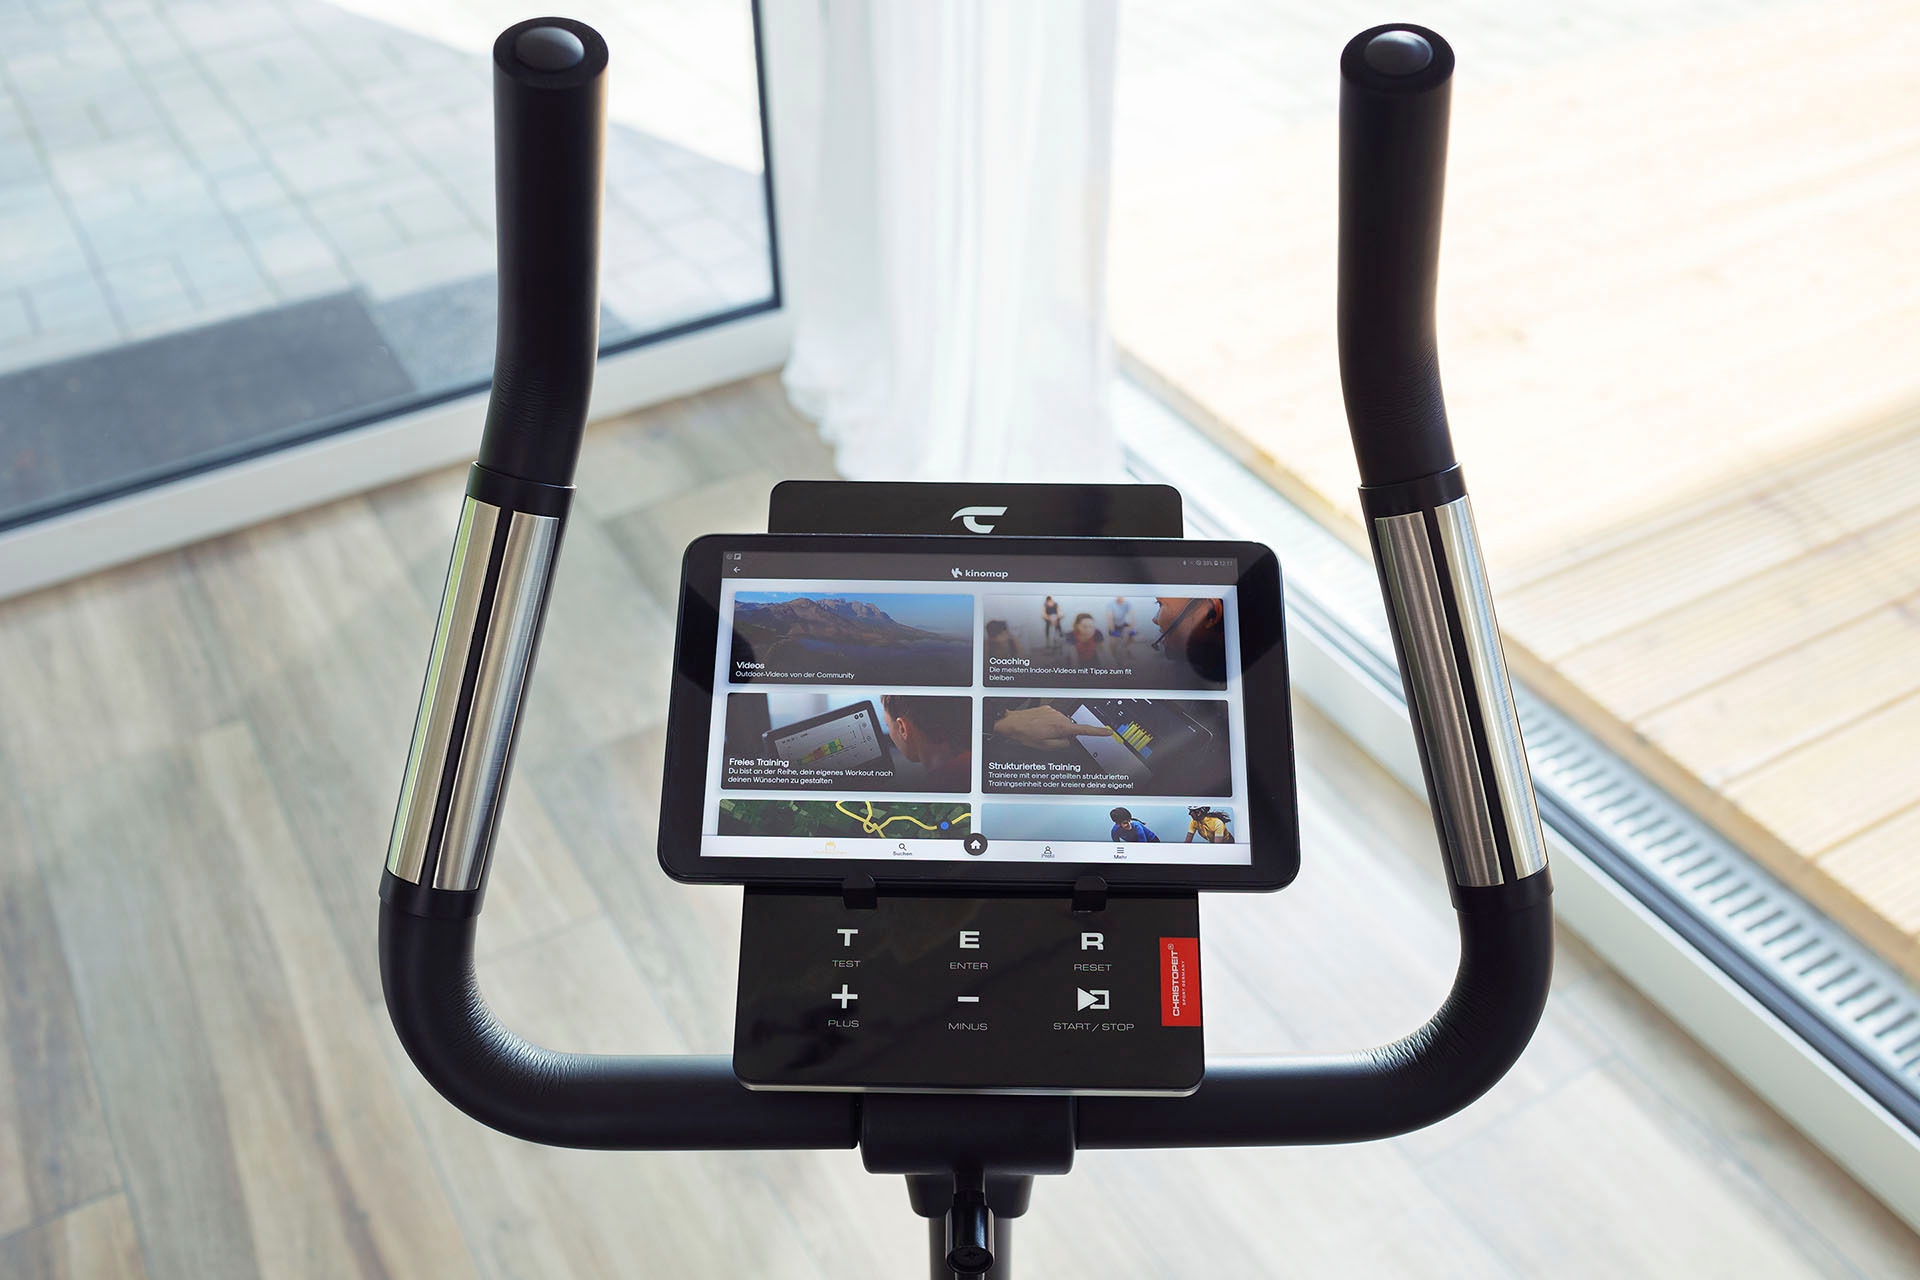 Christopeit Sport® Ergometer »ET 6«, mit LCD-Display online kaufen | Gewichtsmanschetten